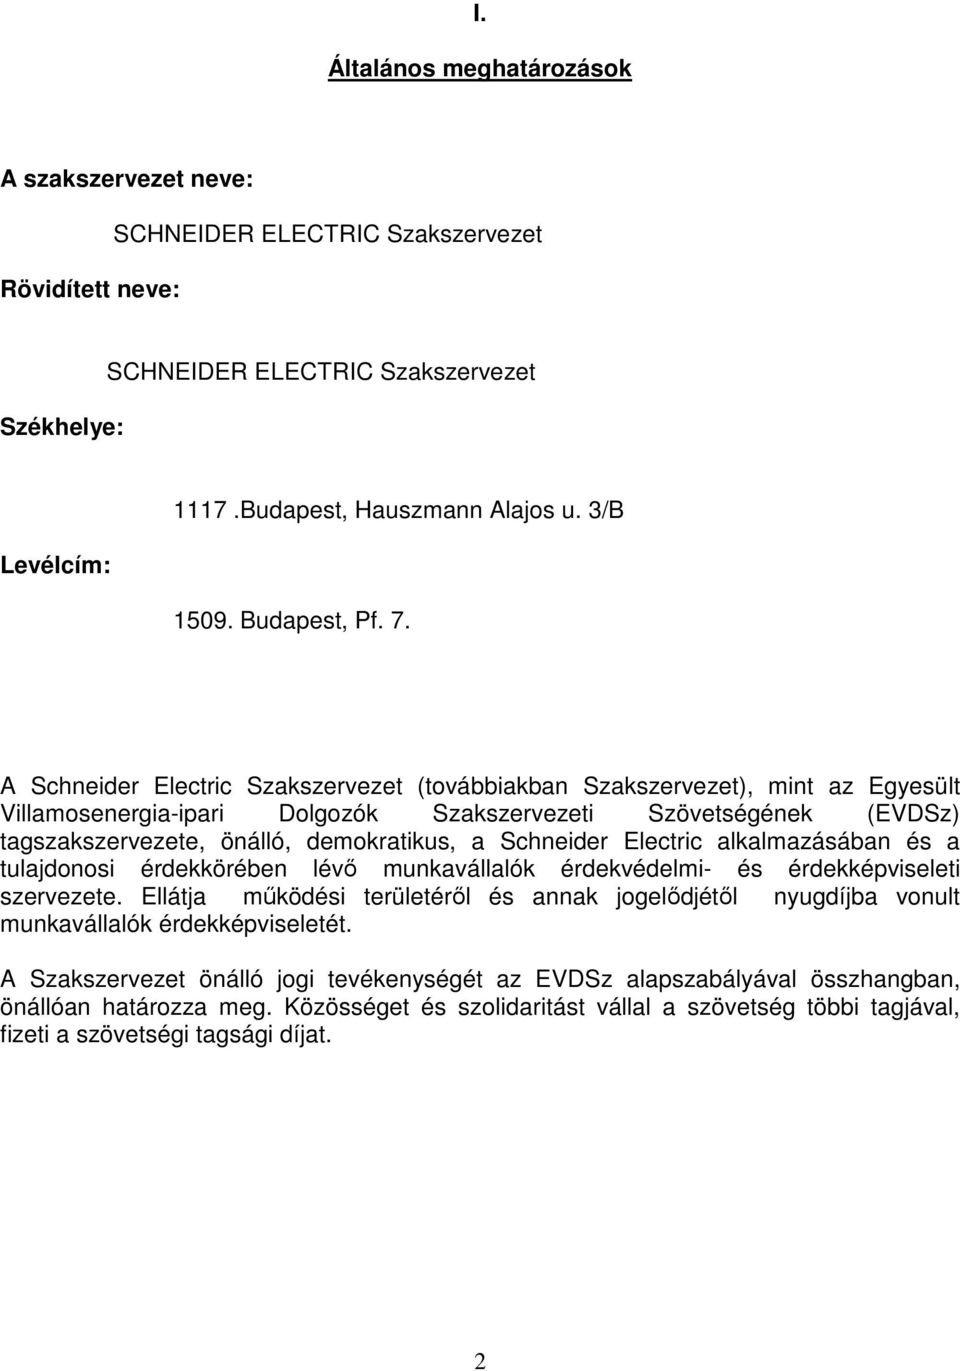 A Schneider Electric Szakszervezet (továbbiakban Szakszervezet), mint az Egyesült Villamosenergia-ipari Dolgozók Szakszervezeti Szövetségének (EVDSz) tagszakszervezete, önálló, demokratikus, a